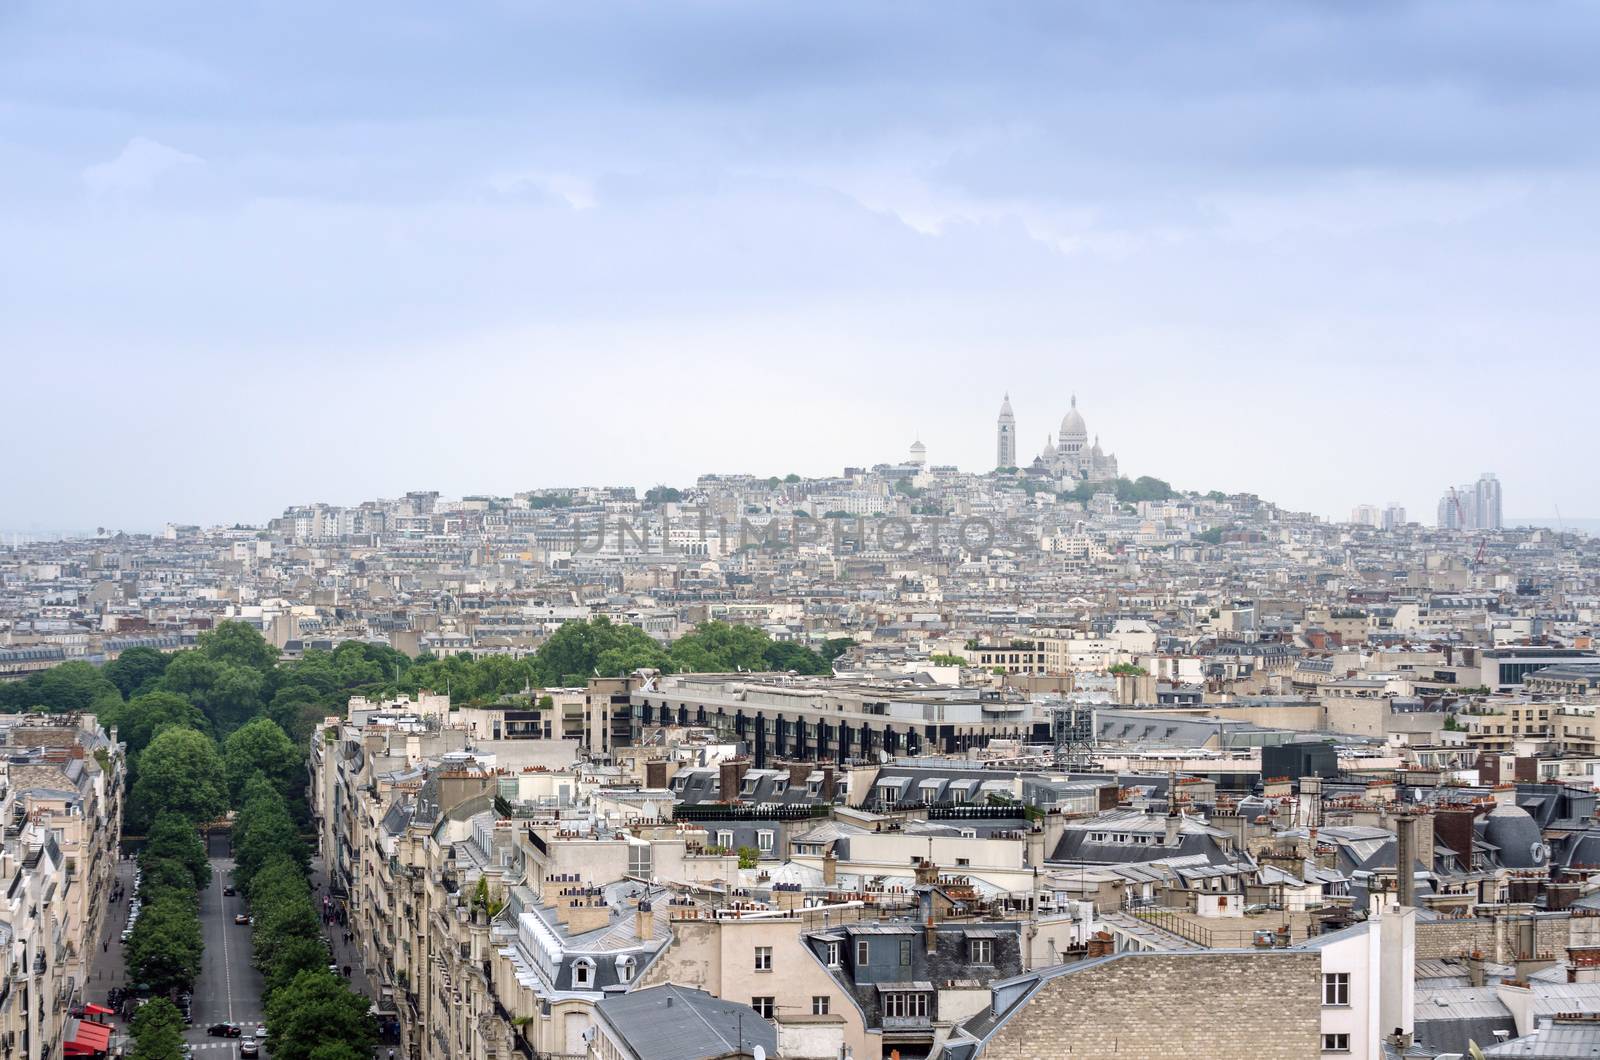 Basilica Sacre Coeur in montmartre with paris skyline, Paris, France.